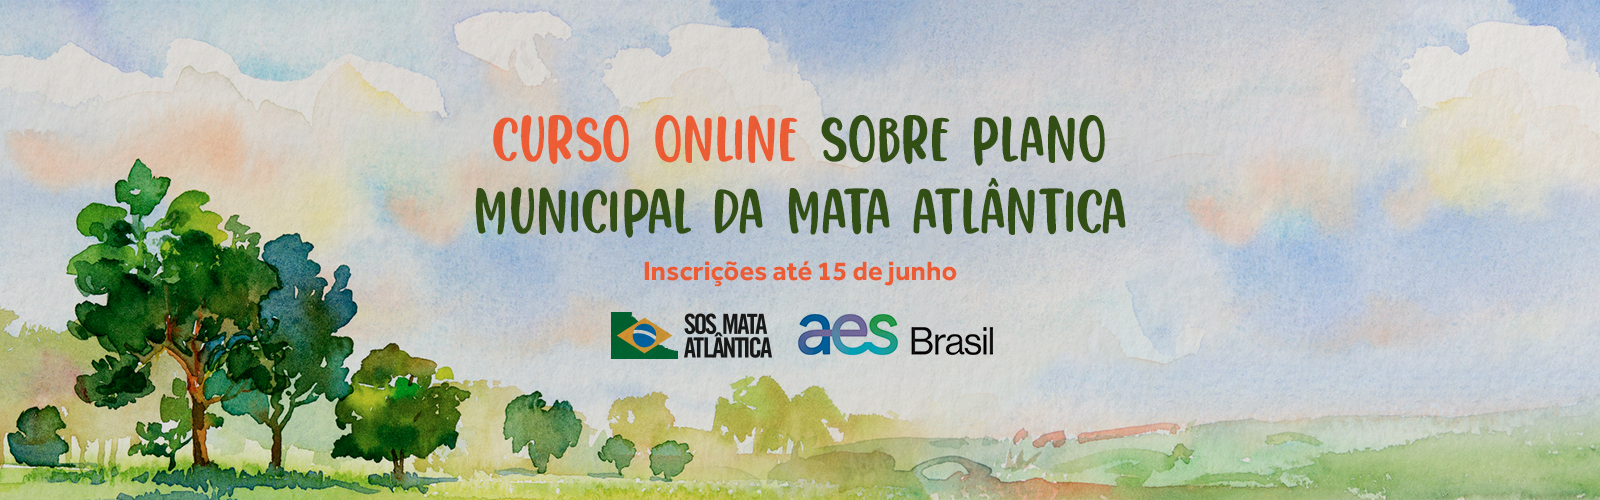 Fundação SOS Mata Atlântica e AES Brasil oferecem curso online gratuito sobre Plano Municipal da Mata Atlântica